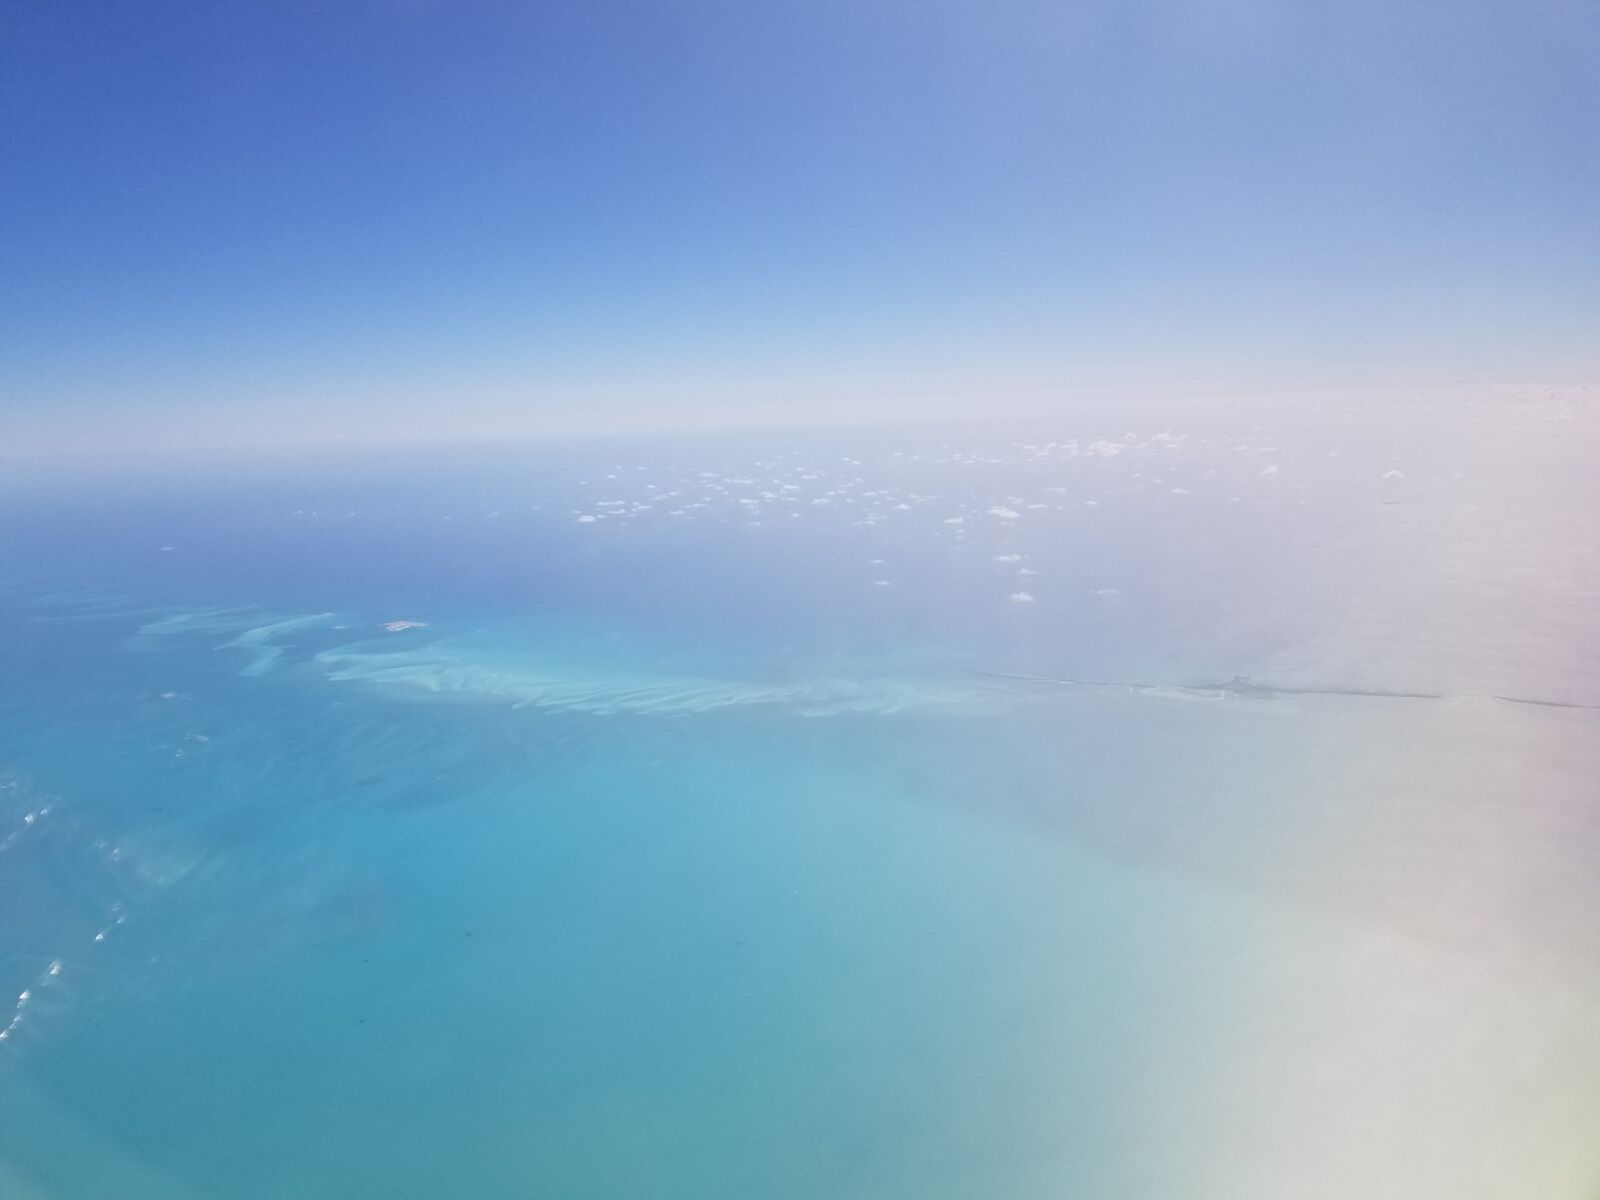 Samsung Galaxy S8+ sample photo. Nature, vacation, bahamas photography